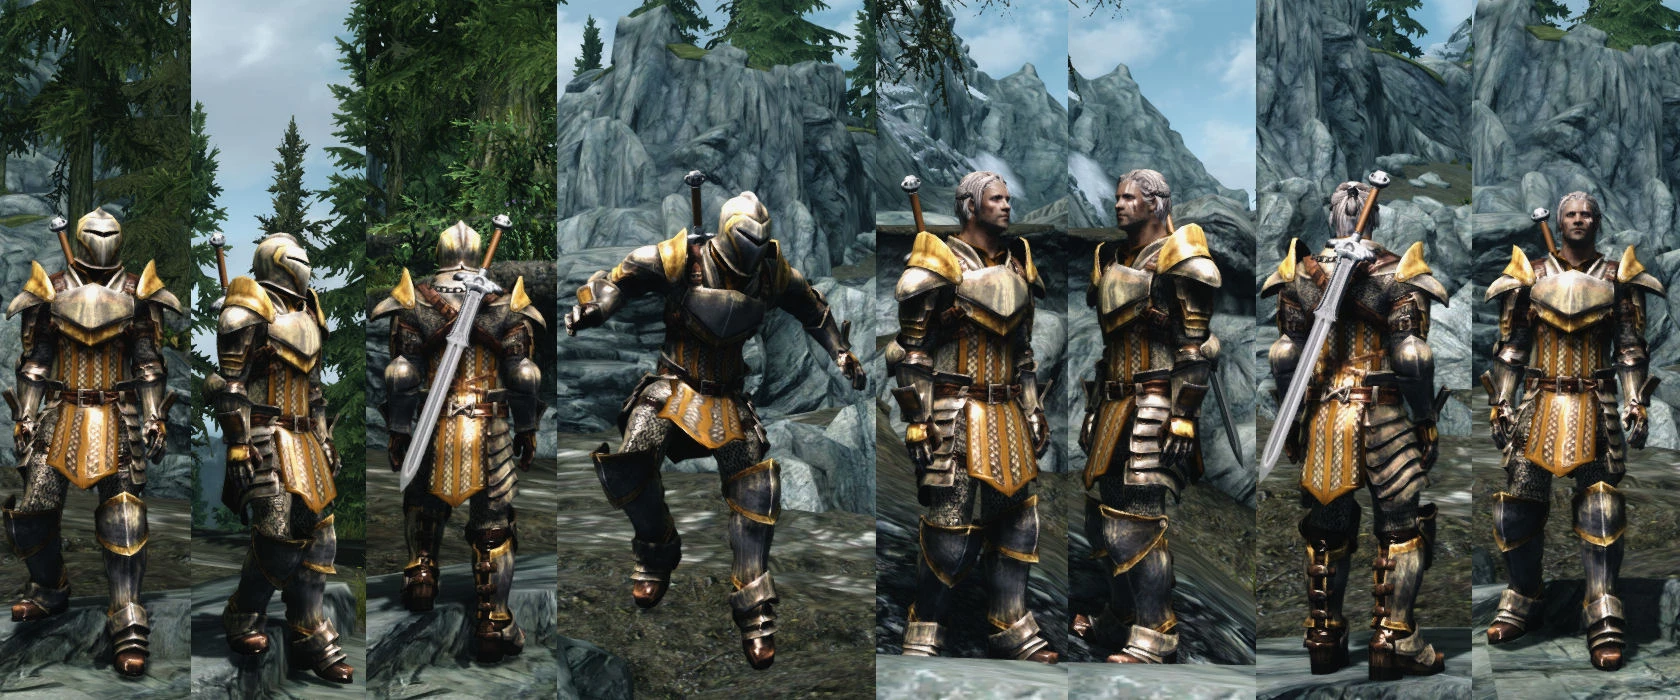 skyrim grey warden armor